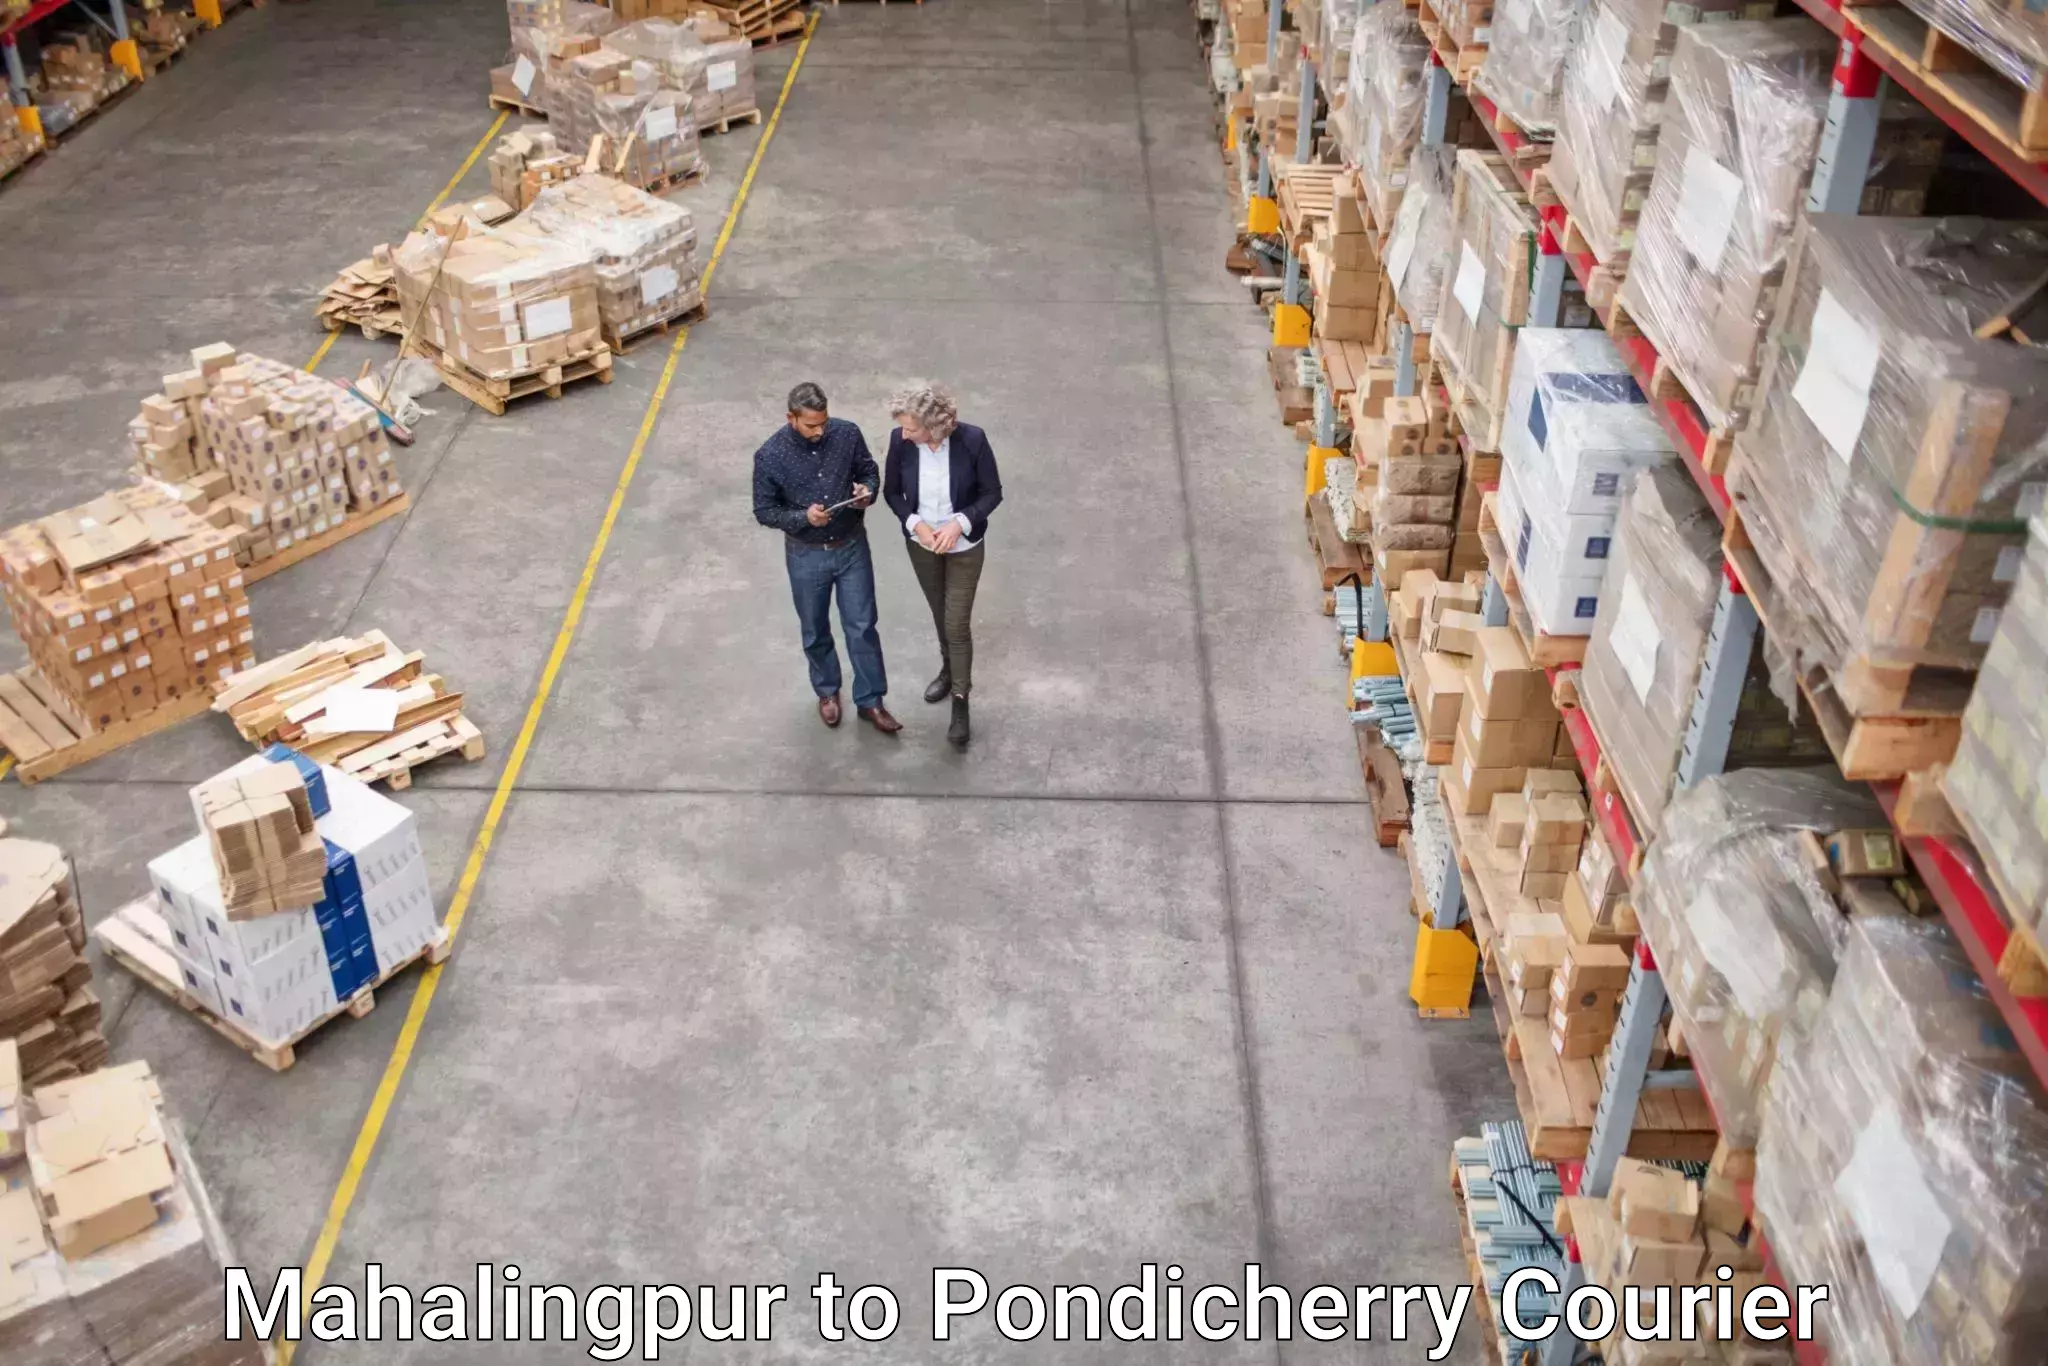 Courier service partnerships Mahalingpur to Karaikal